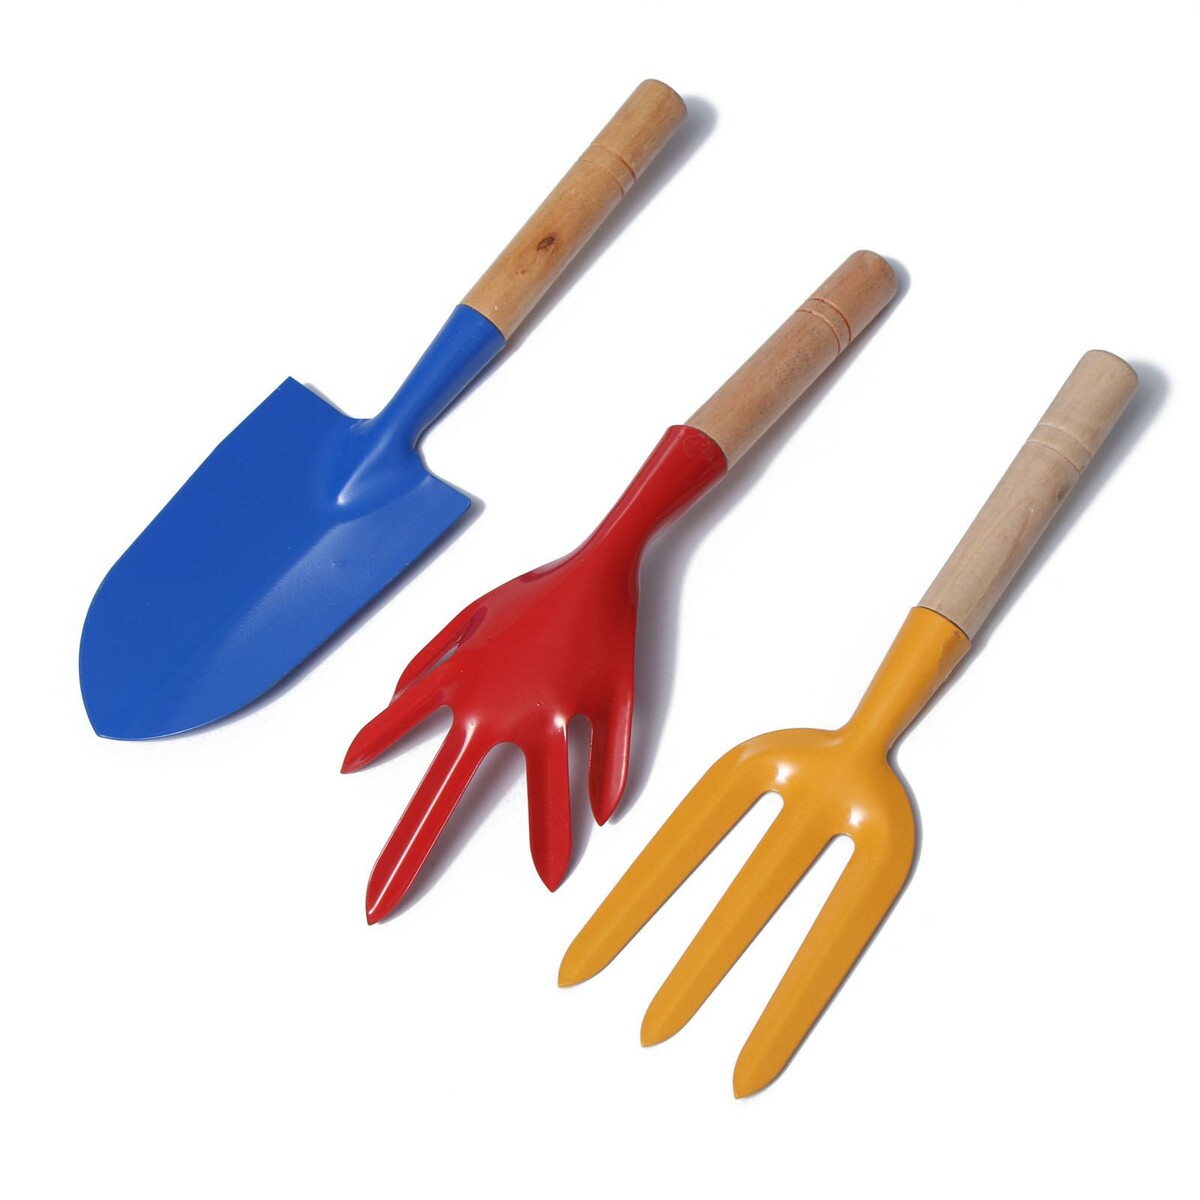 Набор садового инструмента, 3 предмета: совок, рыхлитель, вилка, длина 28 см, деревянные ручки набор совок и щётка с длинными ручками paul masquin